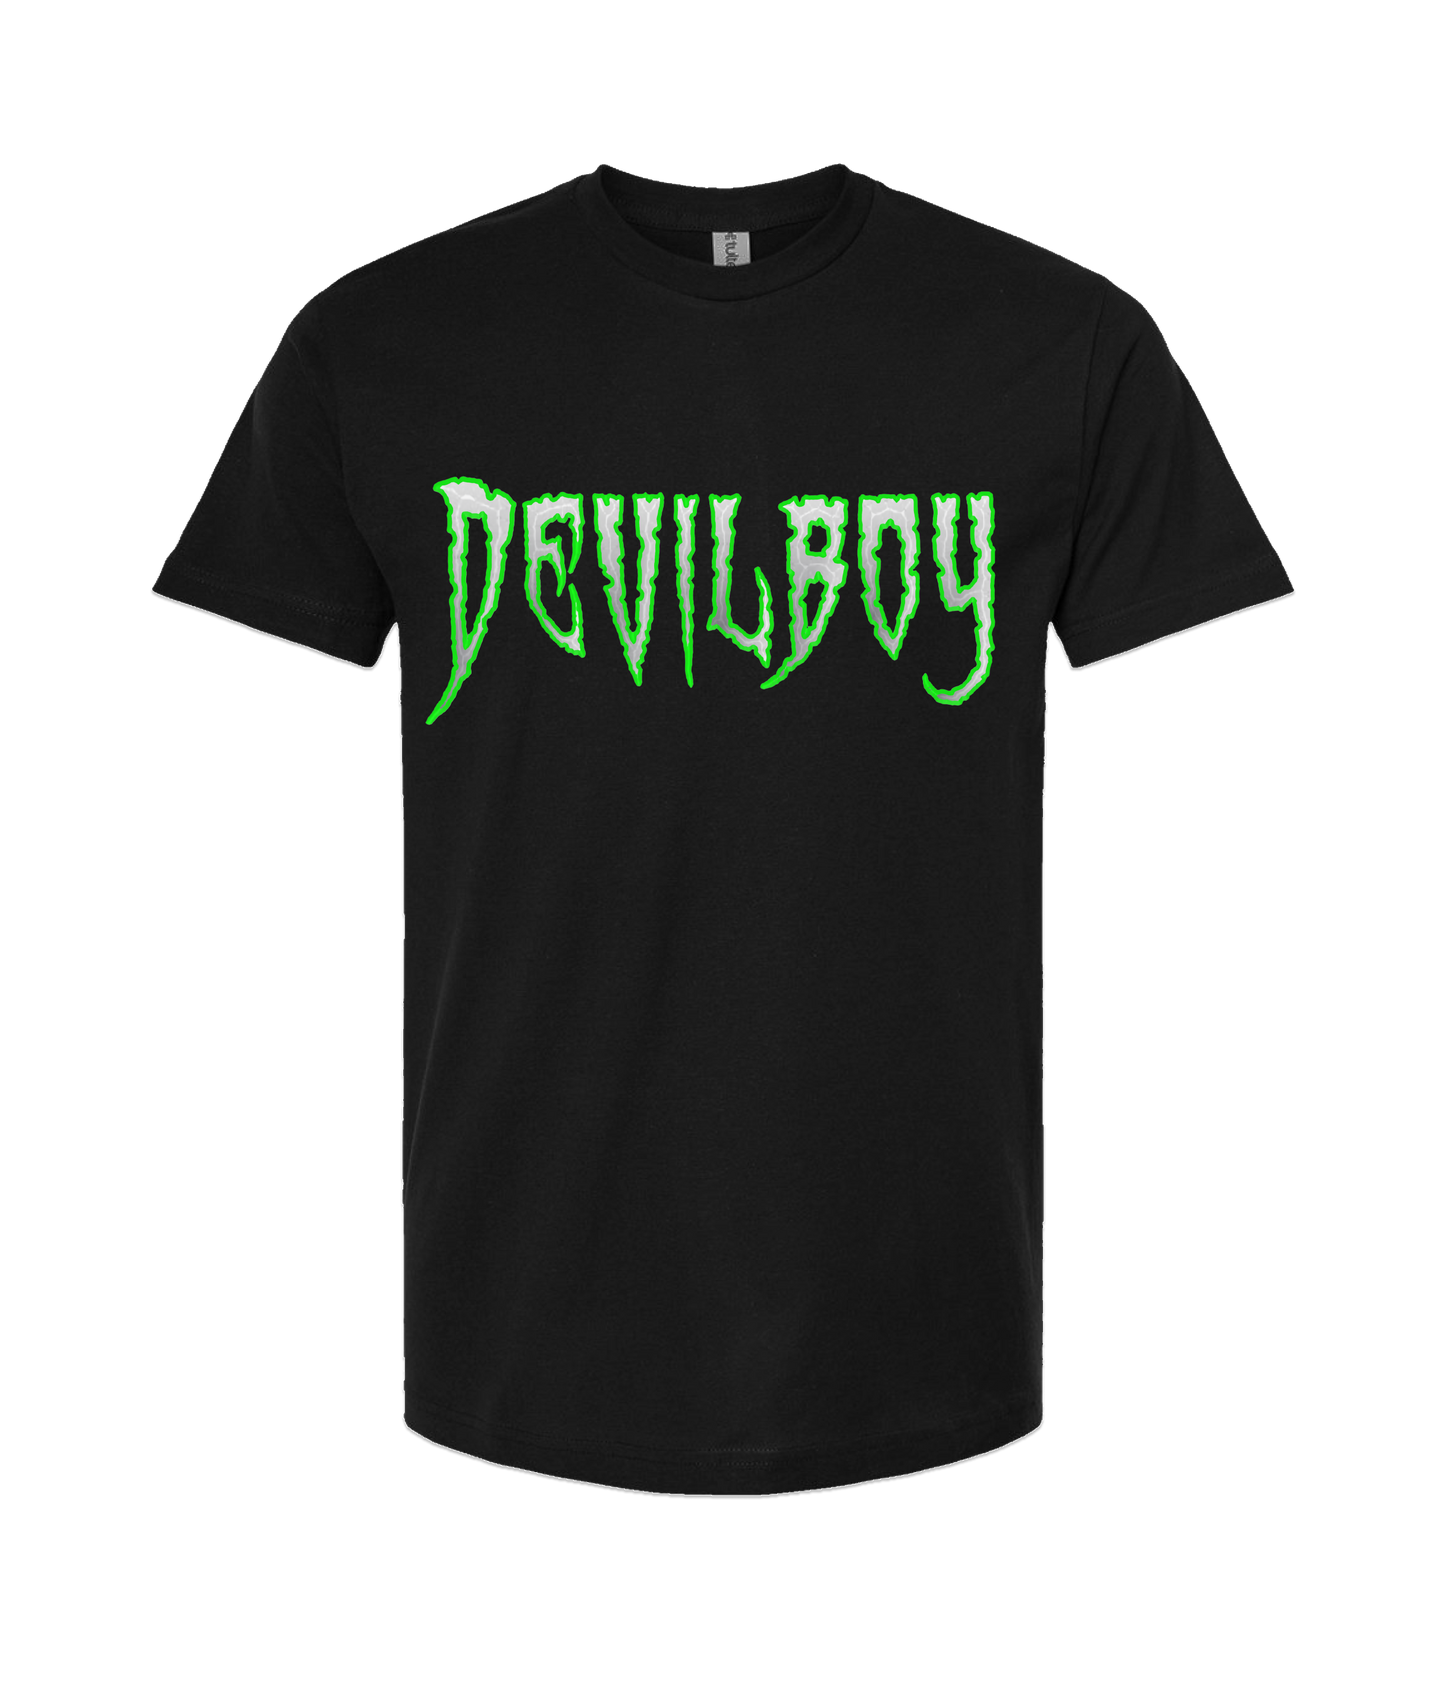 DEVILBOY - DESIGN 1 - Black T-Shirt